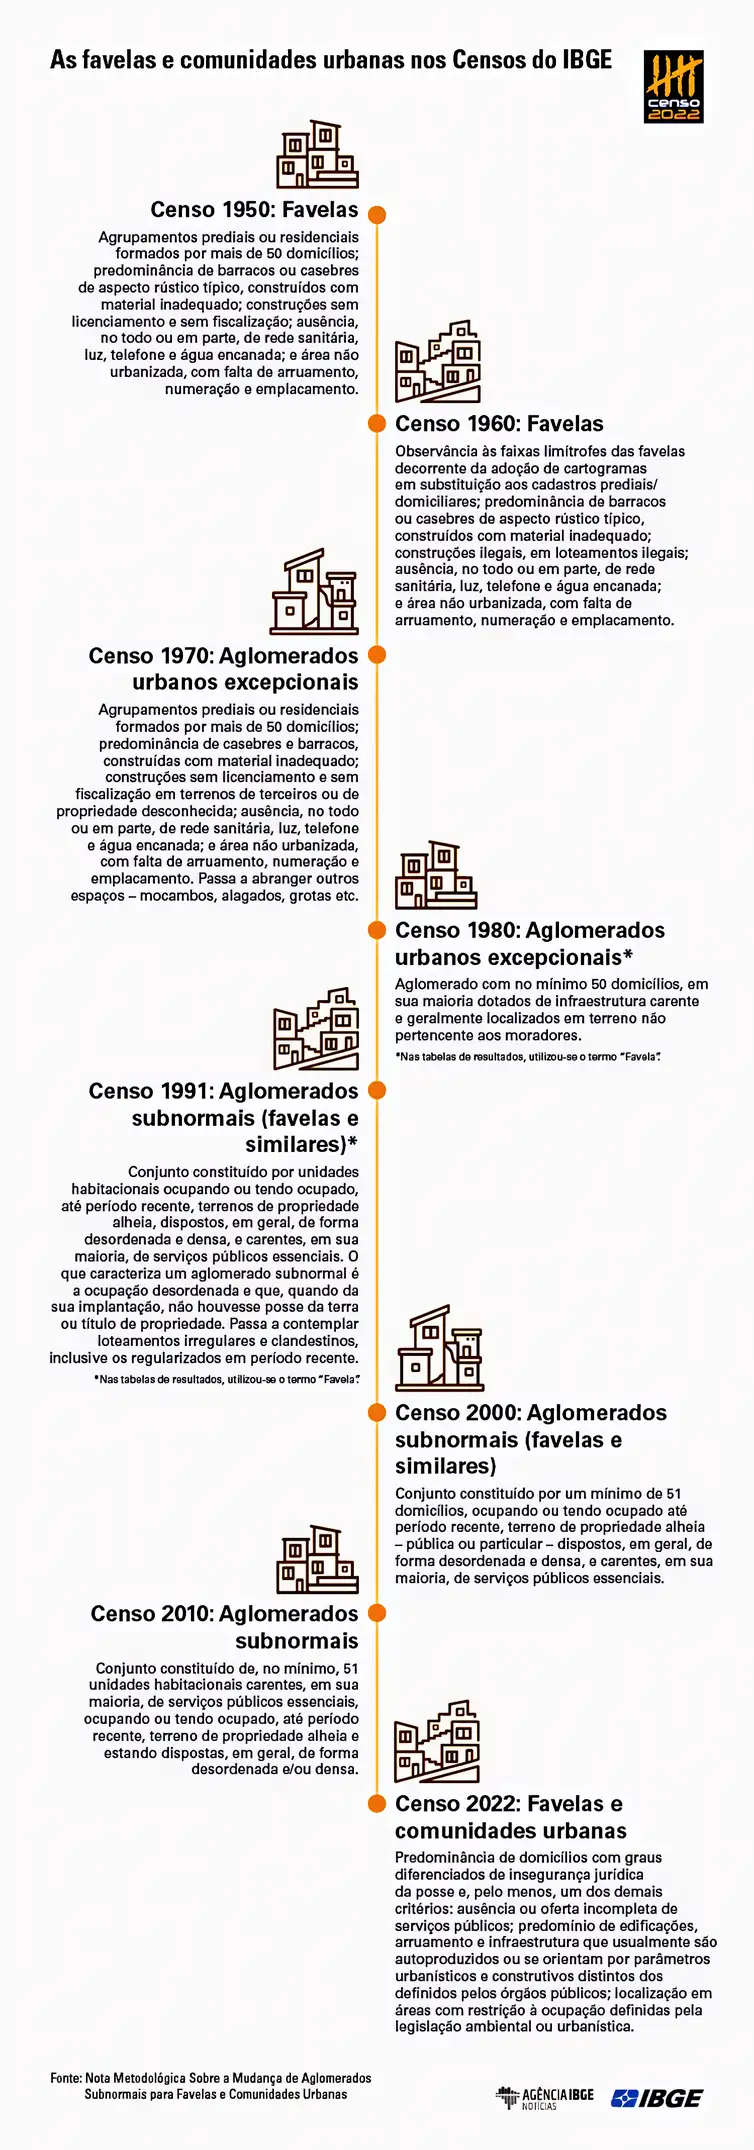 Cronologia de como as favelas e comunidades urbanas foram identificadas nos Censos do IBGE